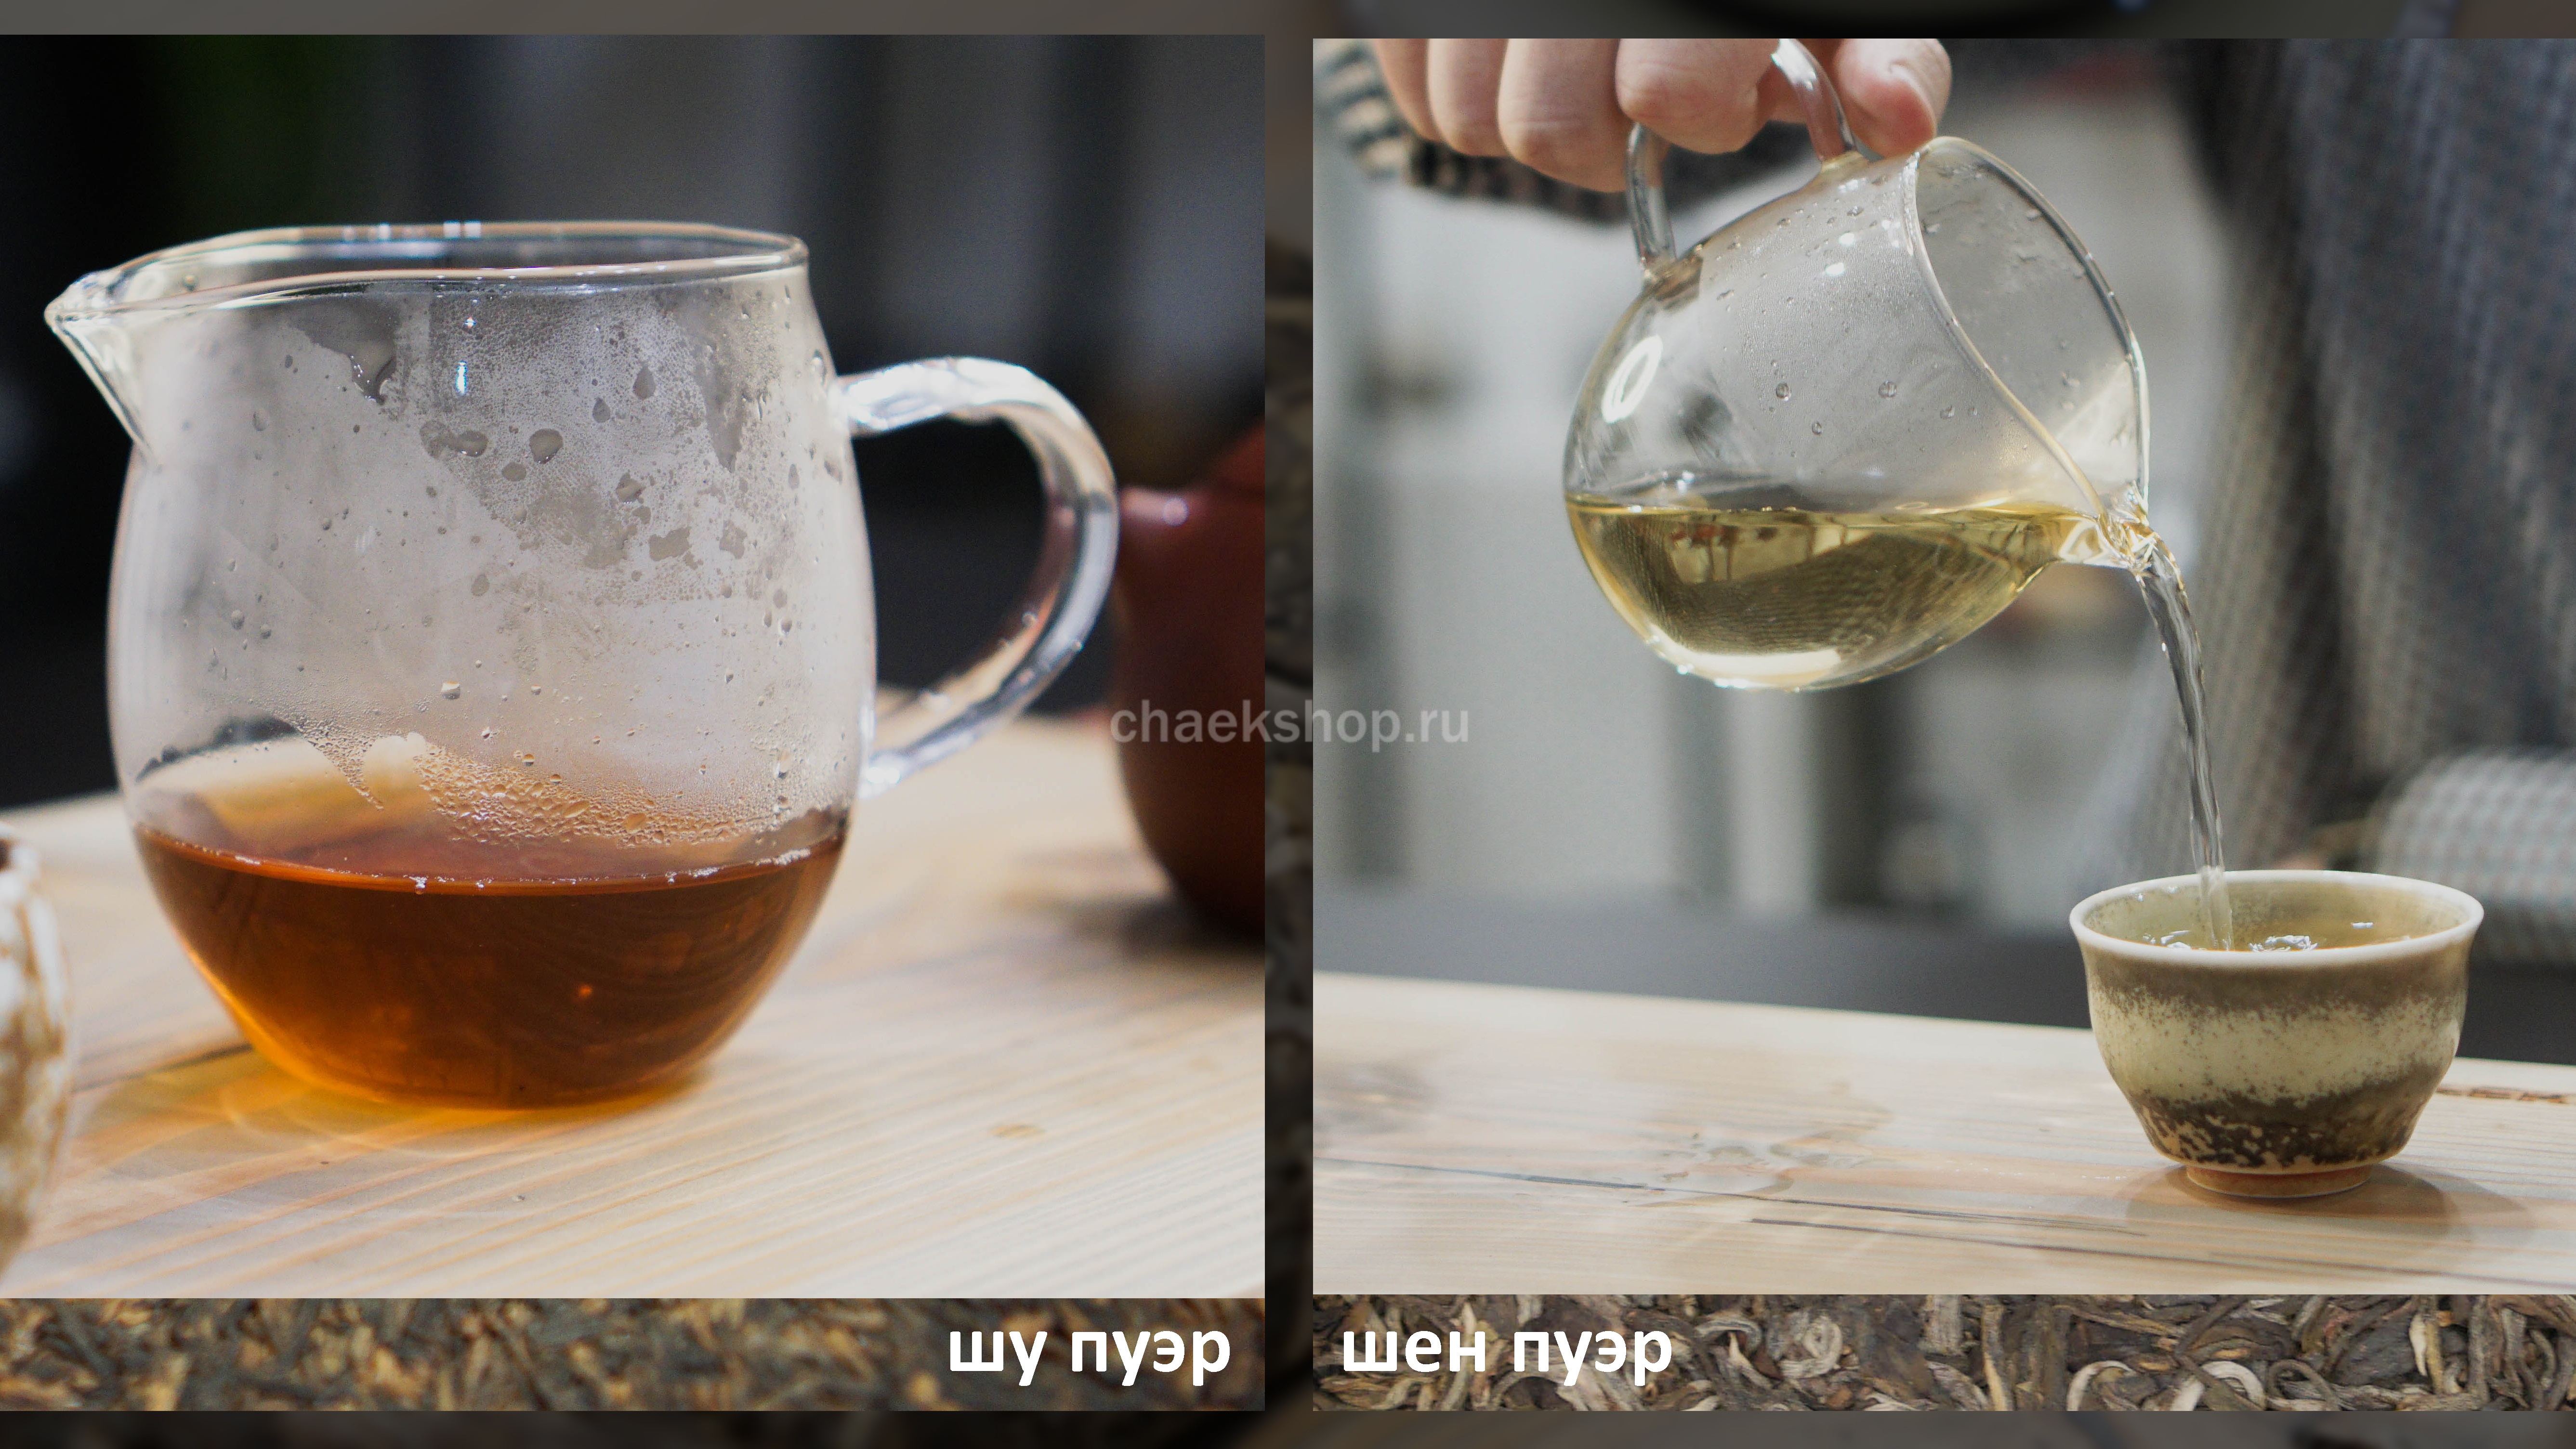 Шу пуэр — чай со сложной ферментацией